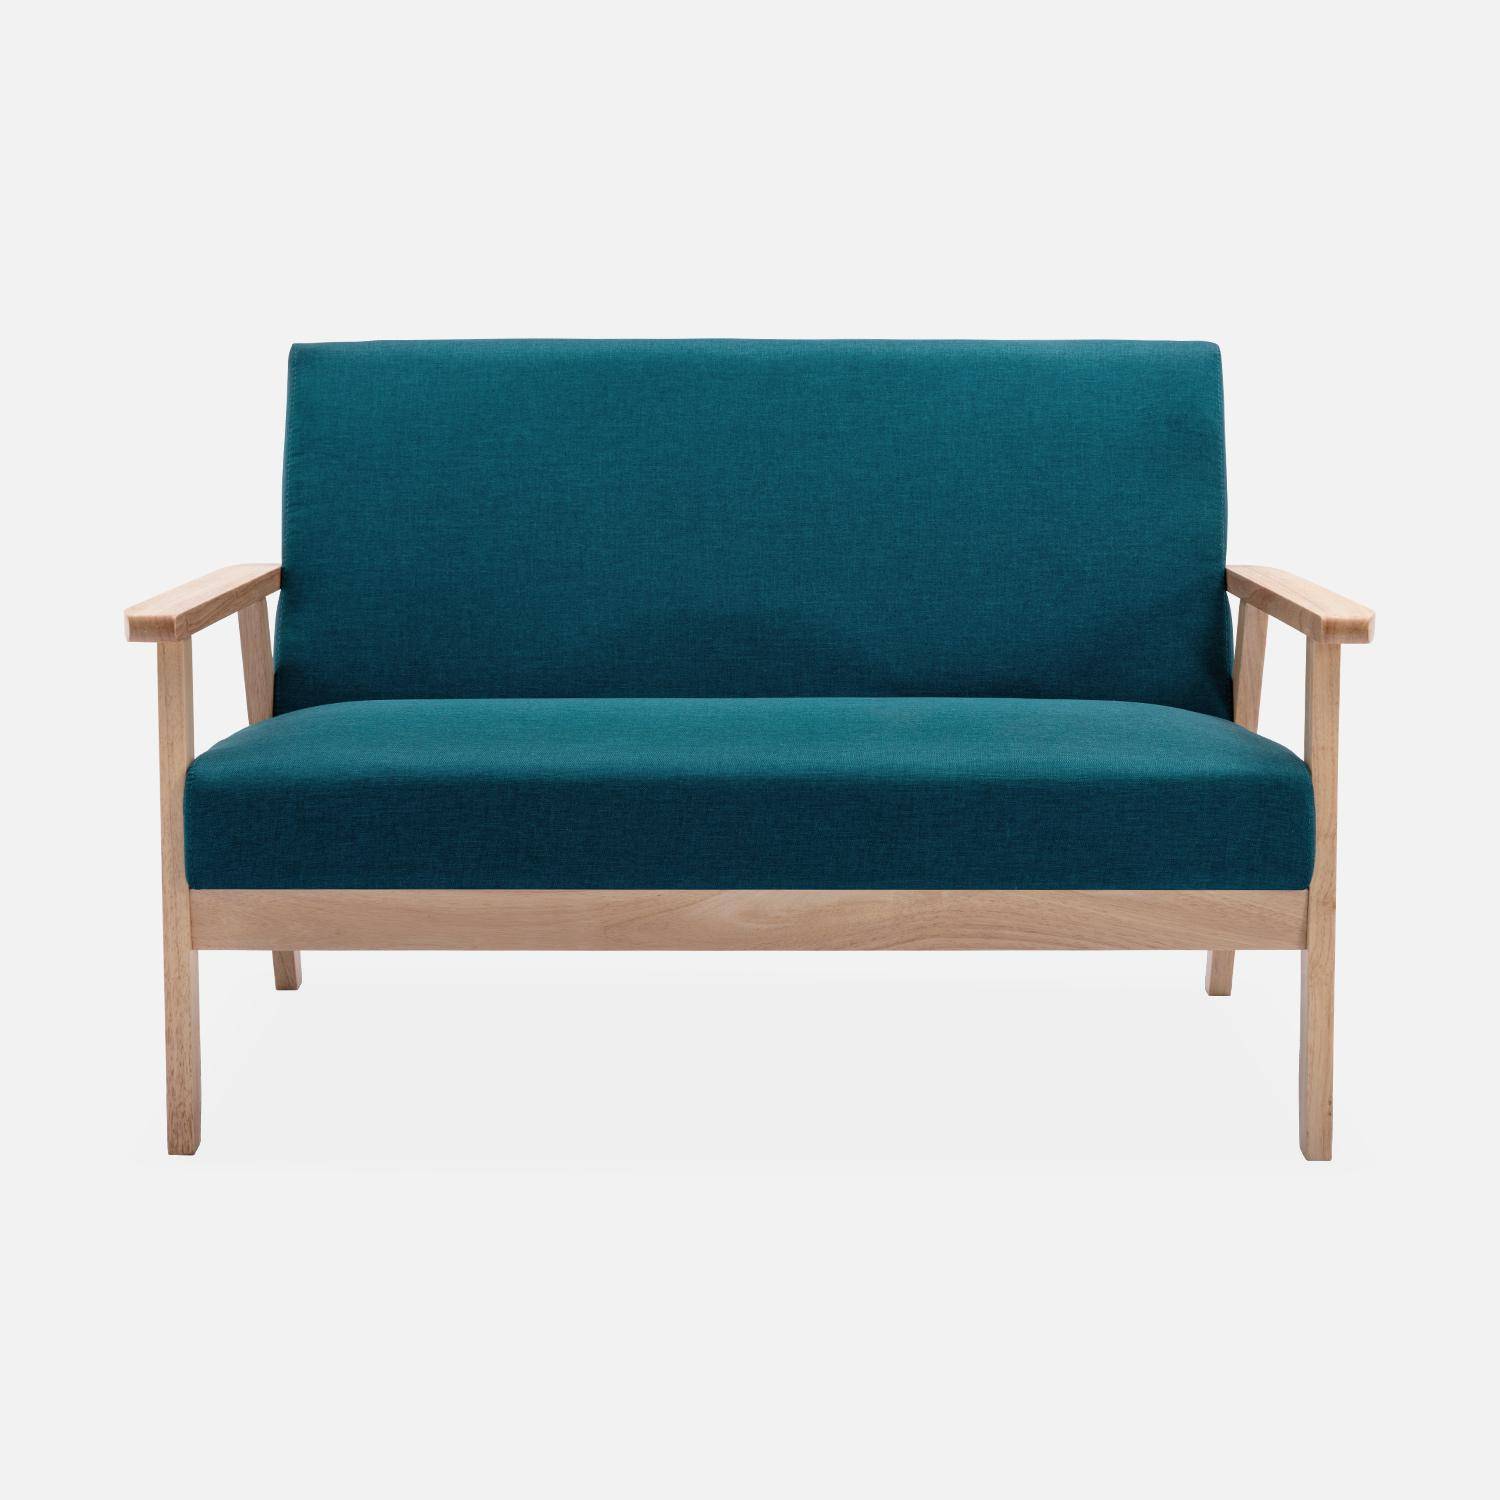 Banquette et fauteuil scandinave en bois et tissu bleu pétrole L 114 x l 69,5 x H 73cm Photo2